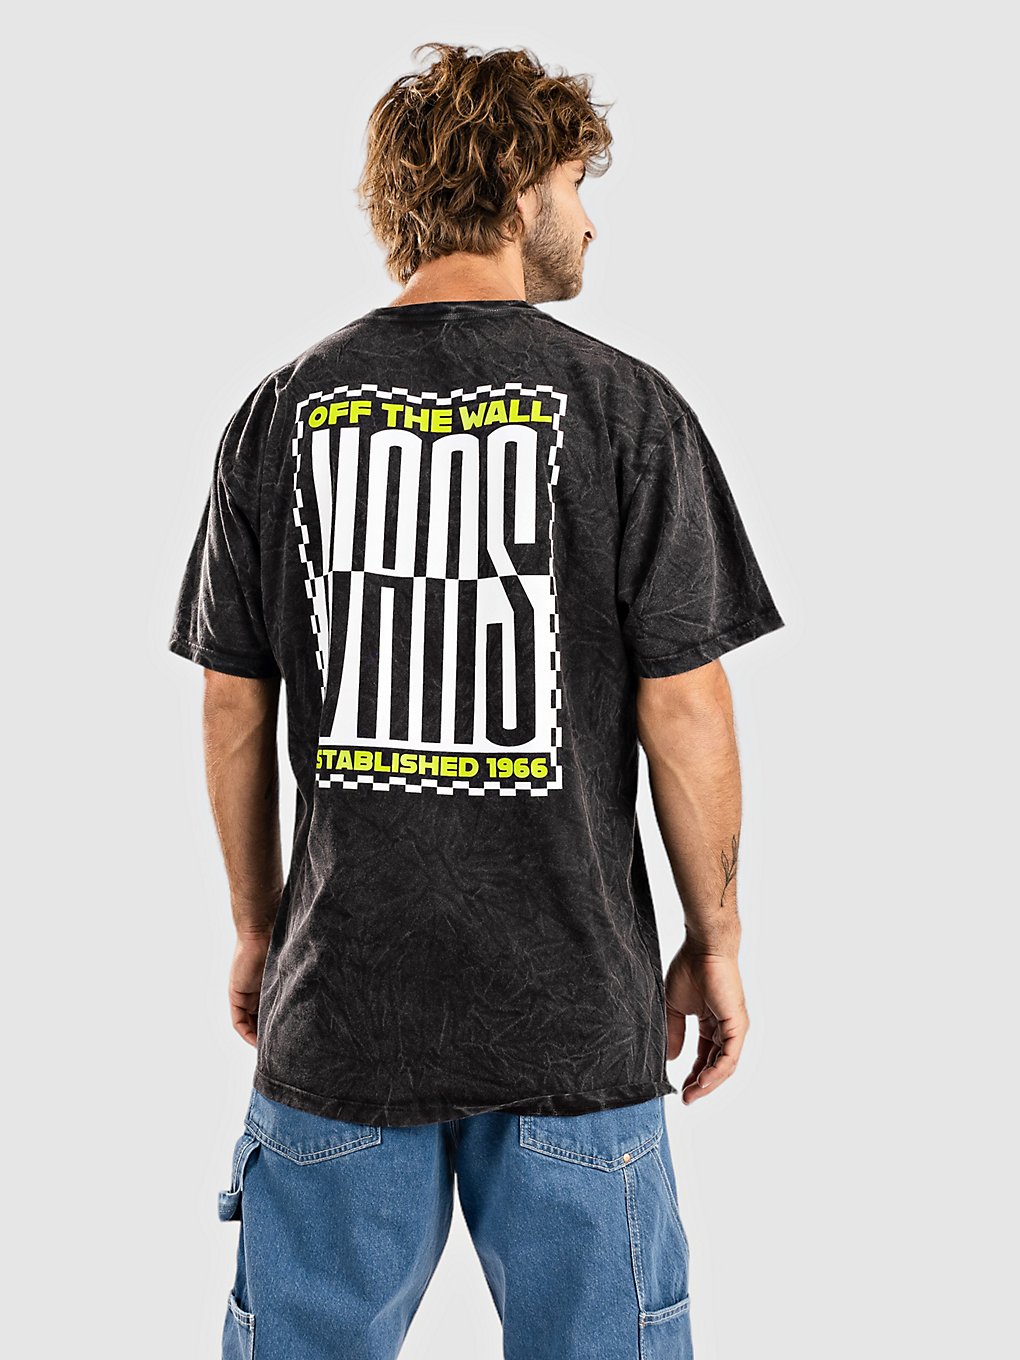 Vans Stacked Tie Dye Logo T-Shirt black kaufen